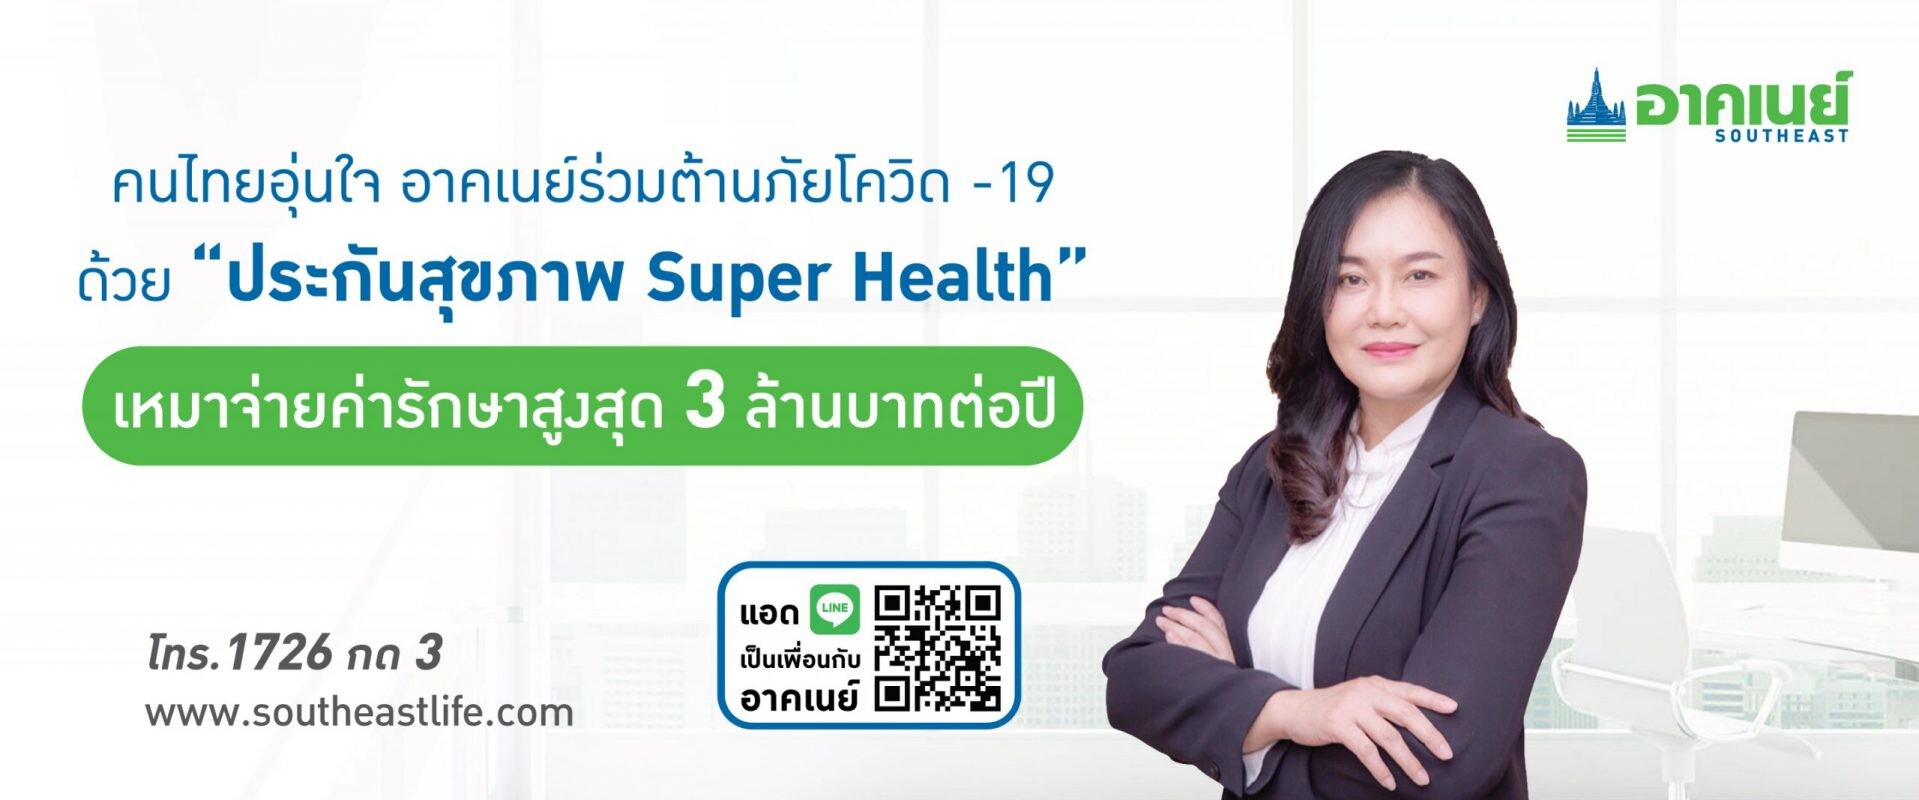 อาคเนย์ ห่วงใยลูกค้าและคนไทยร่วมต้านภัยโควิด-19  ส่งประกัน สุขภาพ "ซูเปอร์ เฮลท์" เหมาจ่าย สูงสุด 3 ล้านบาทต่อปี